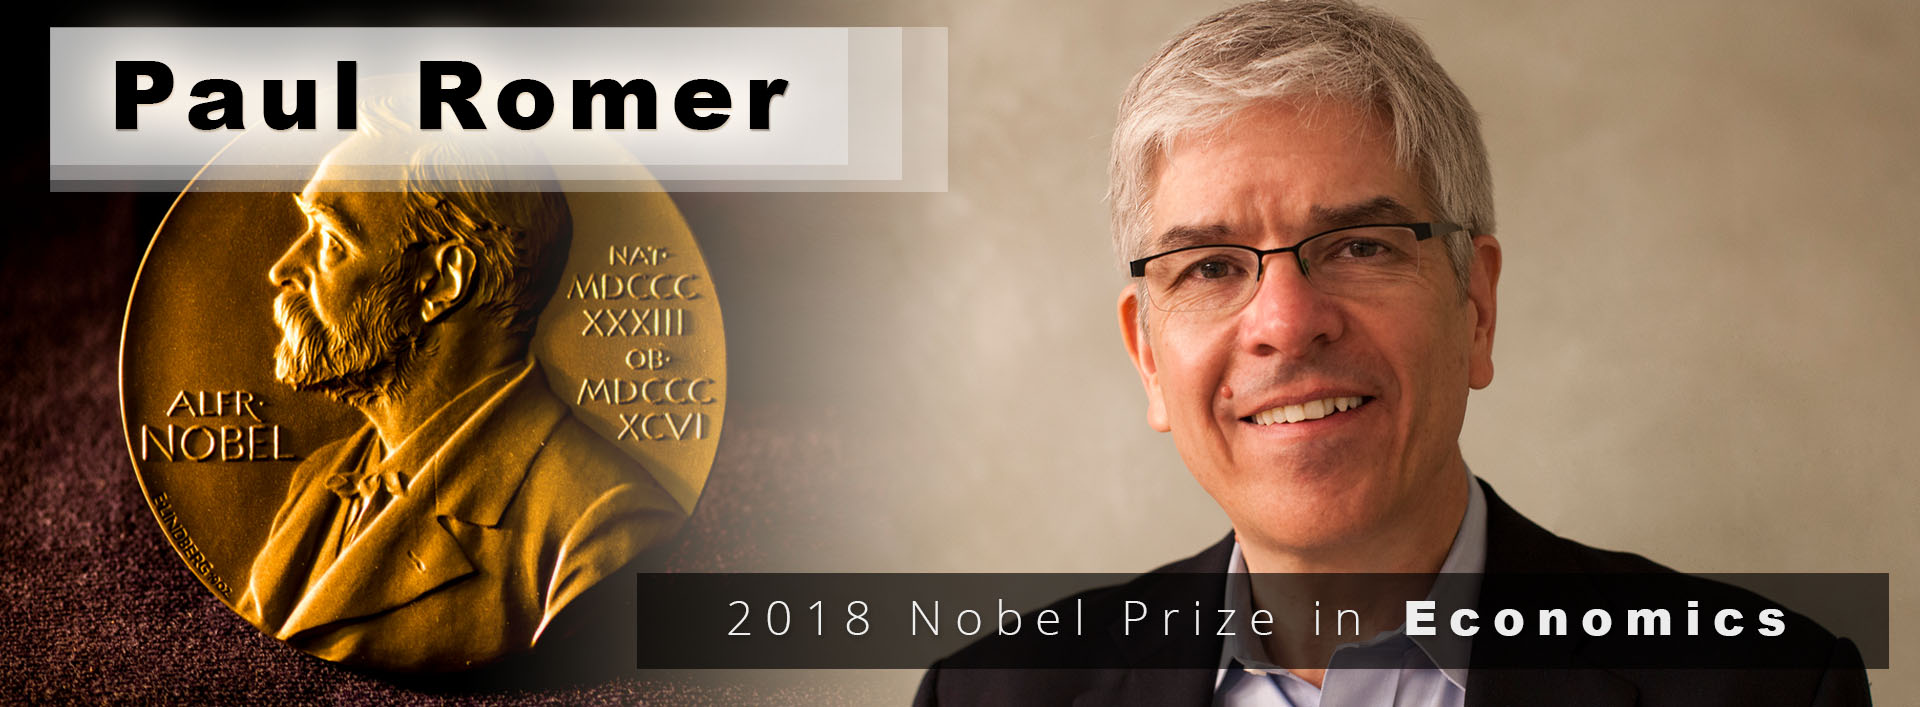 Paul-Romer__2018-Nobel-Prize-in-Economics